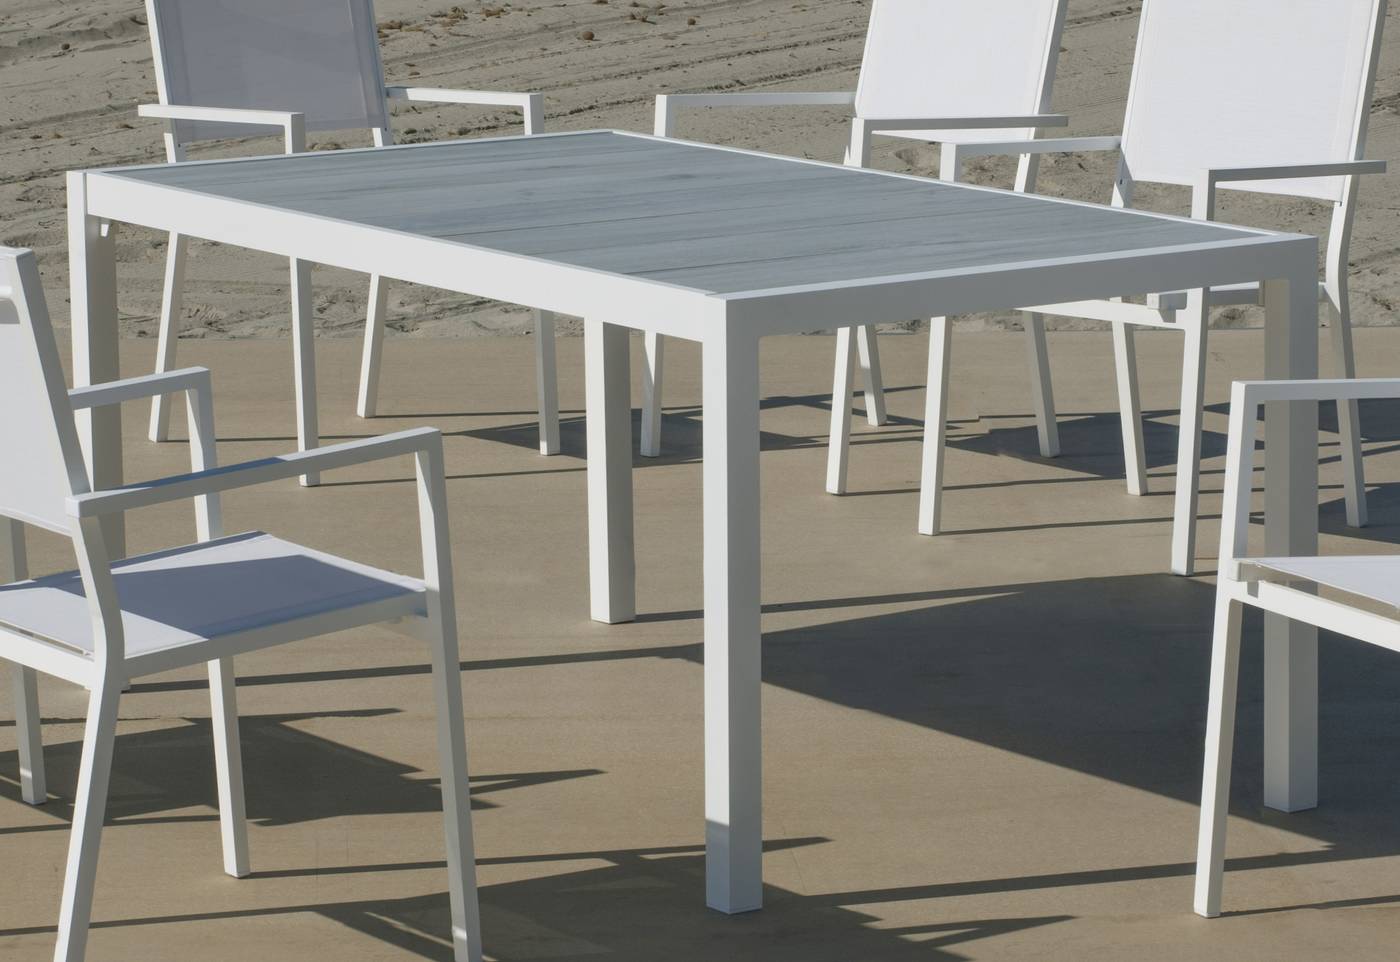 Set Palermo-160-6 Janeiro - Conjunto de aluminio para jardín: Mesa rectangular con tablero cerámico de 160 cm + 6 sillones altos de textilen. Colores: blanco y antracita.